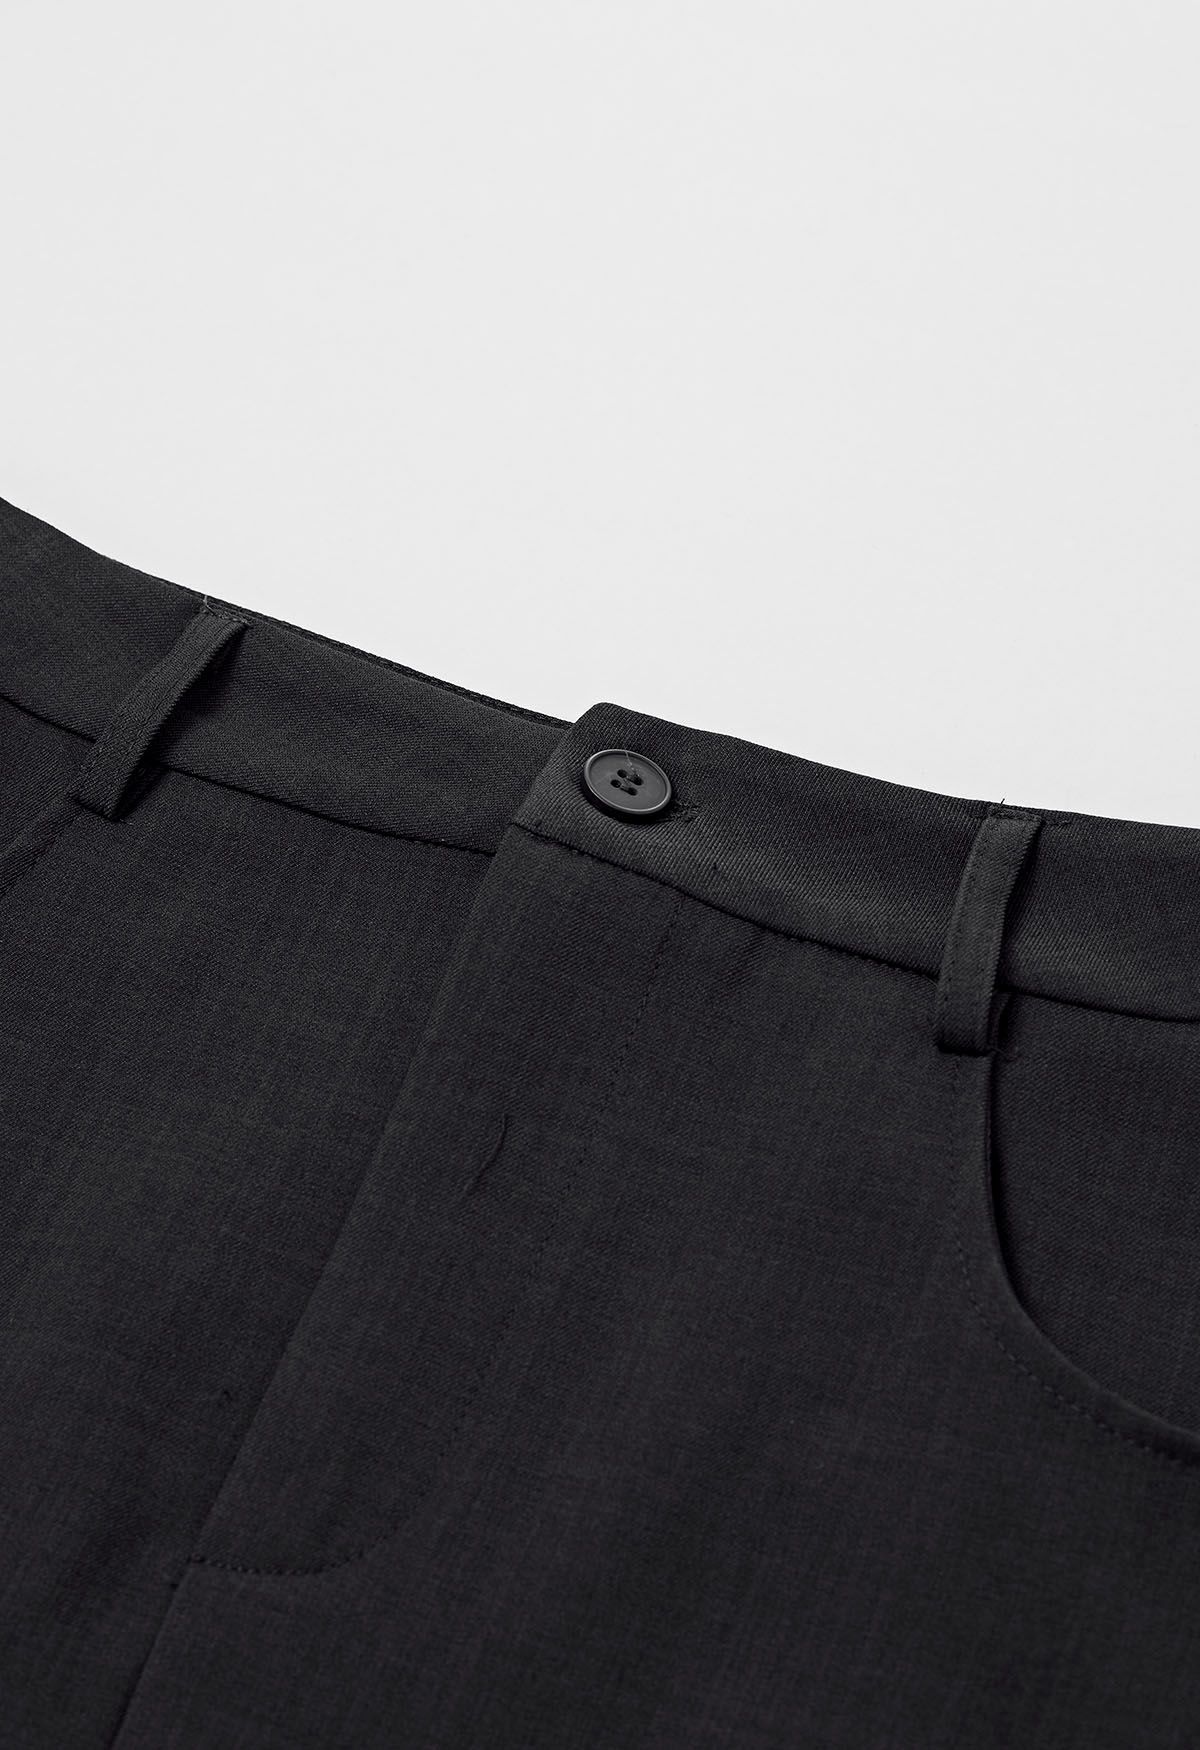 Slit Back Belted Maxi Skirt in Black